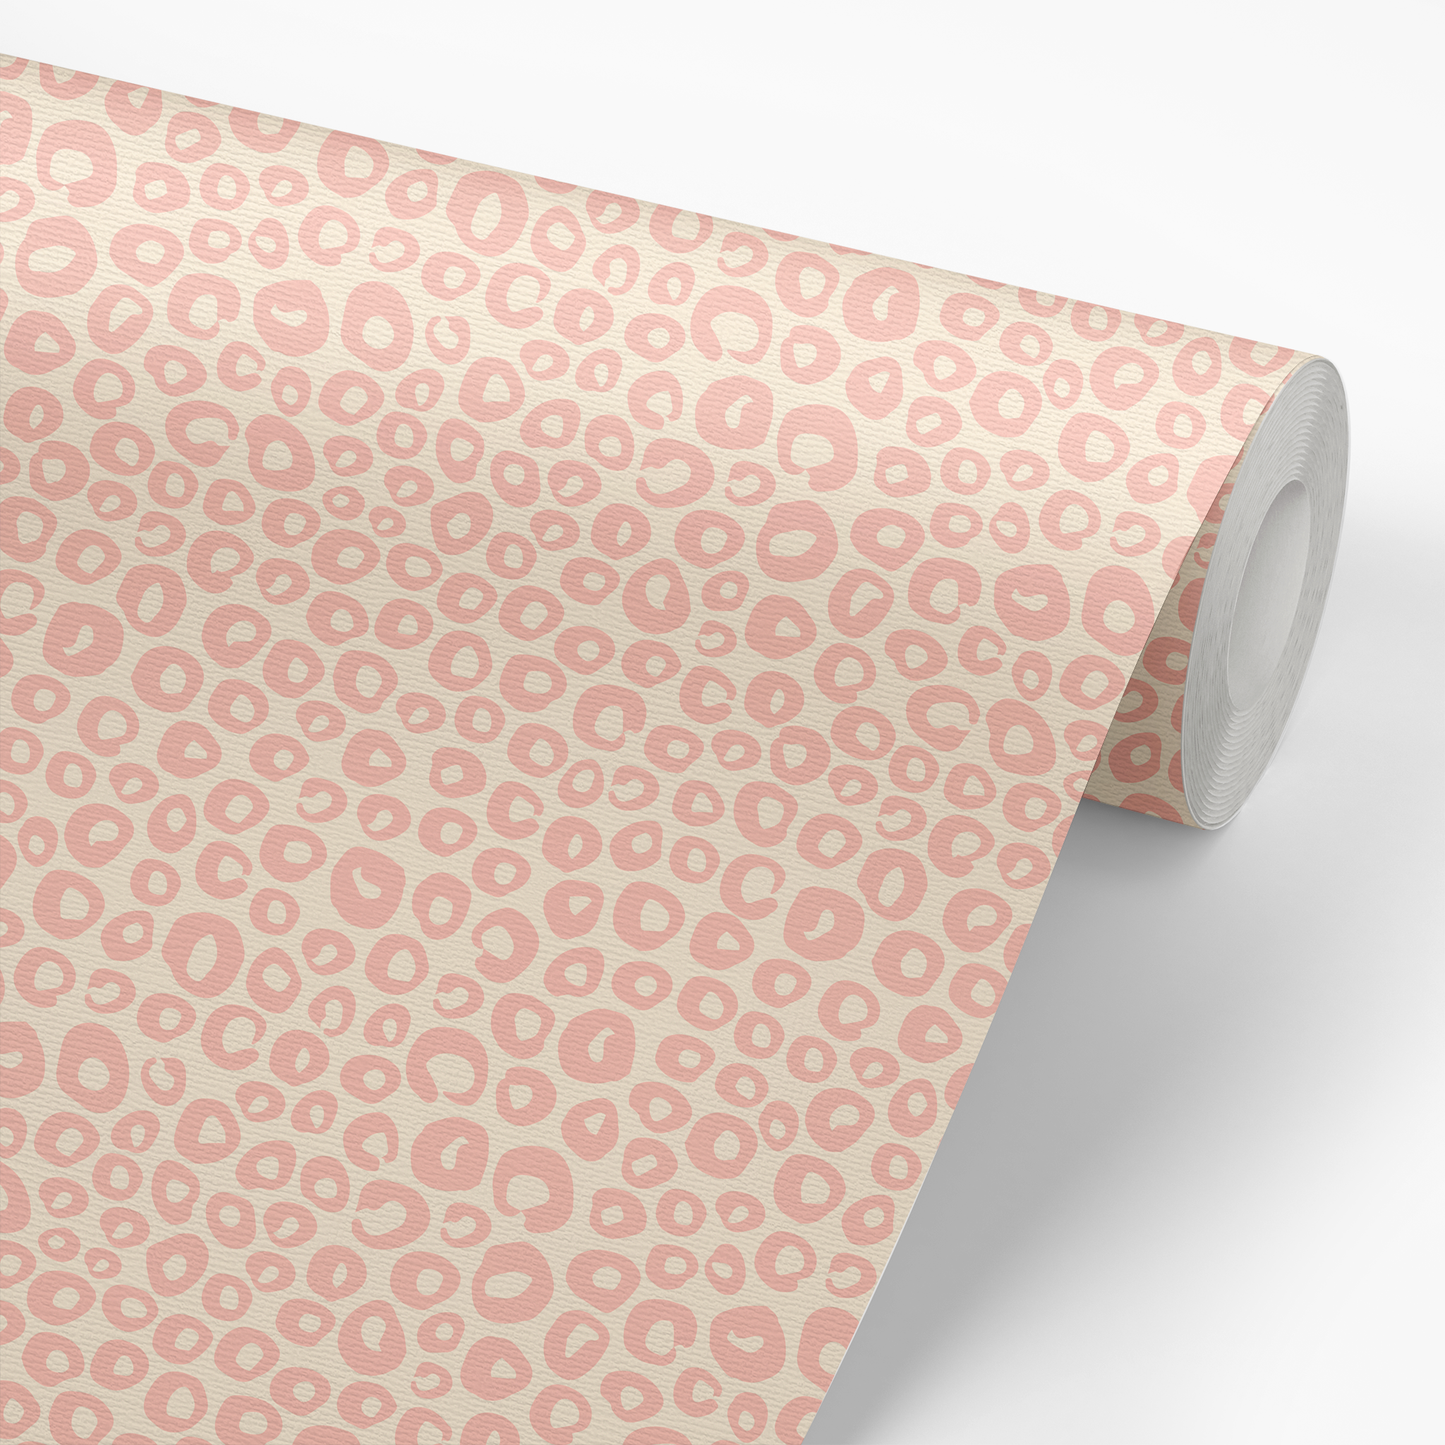 Open Dots Wallpaper - Pink